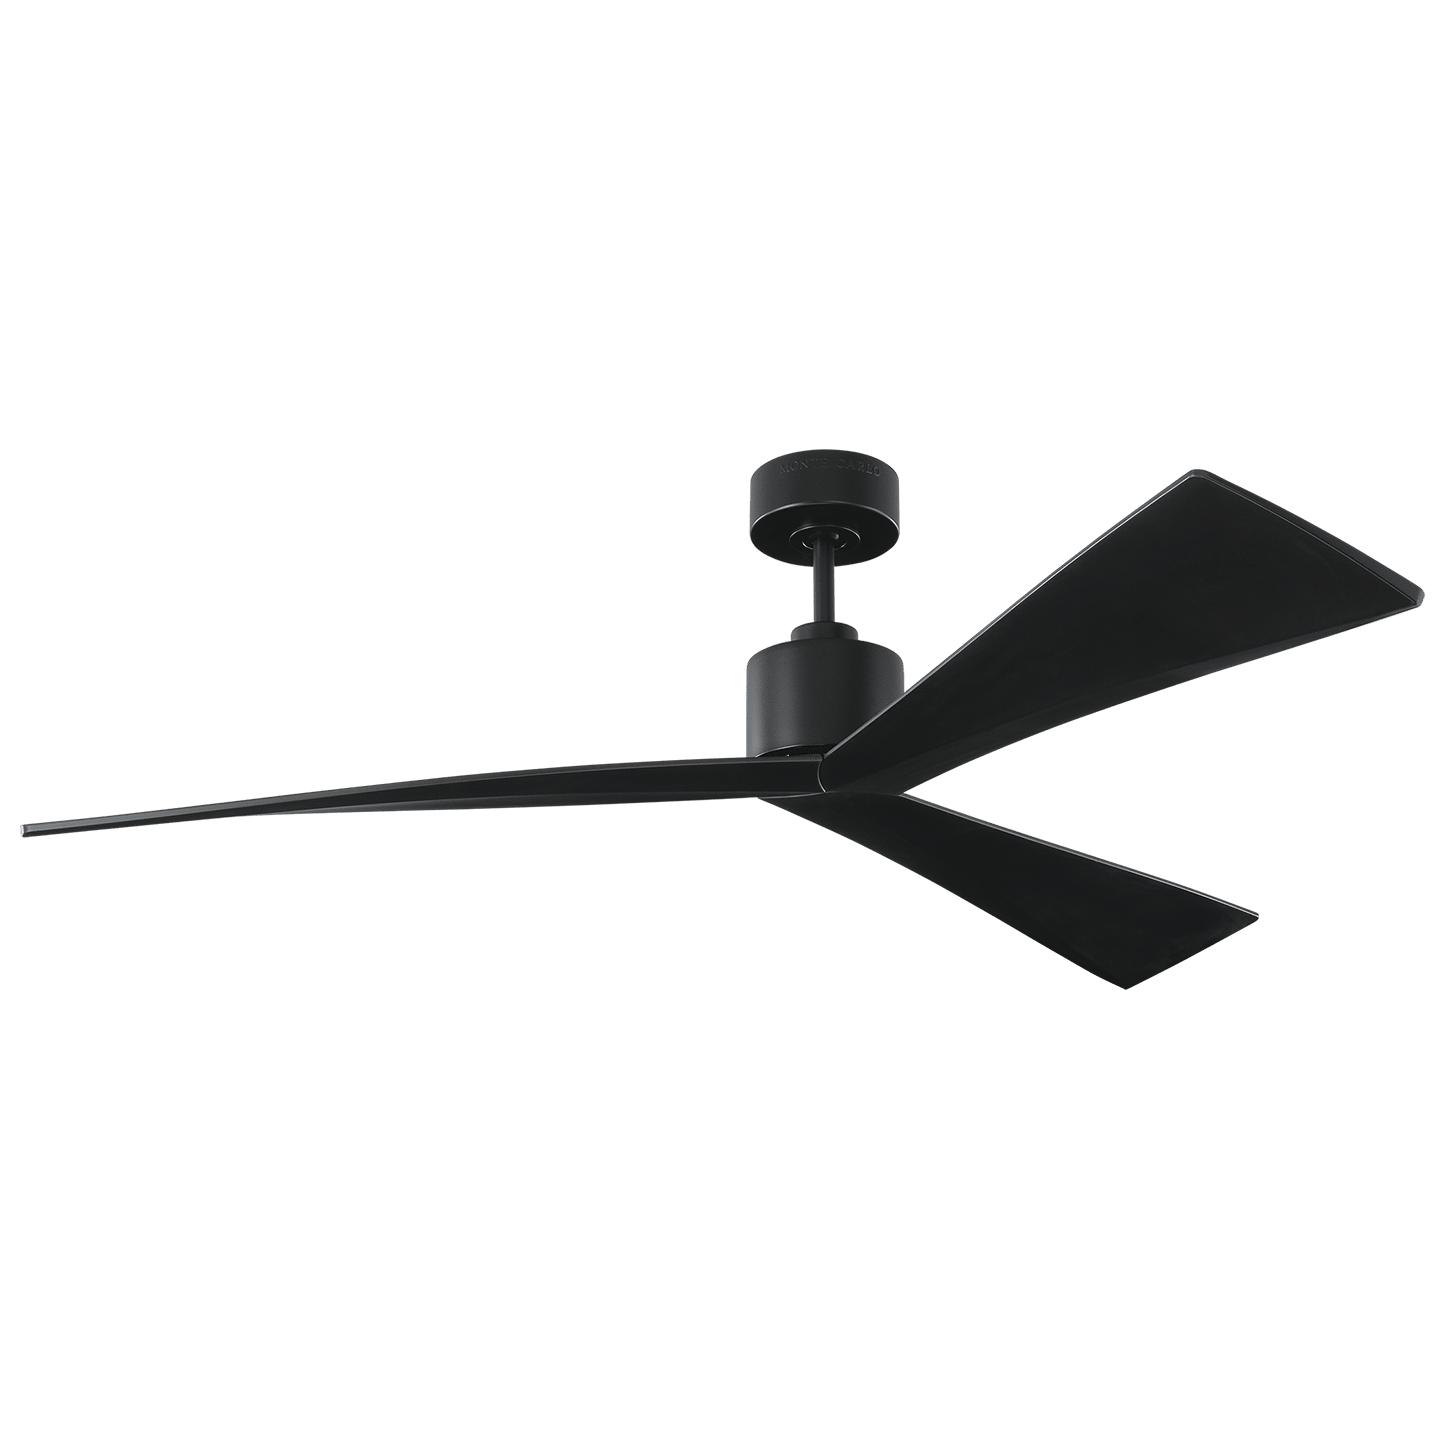 Купить Потолочный вентилятор Adler 60" Ceiling Fan в интернет-магазине roooms.ru